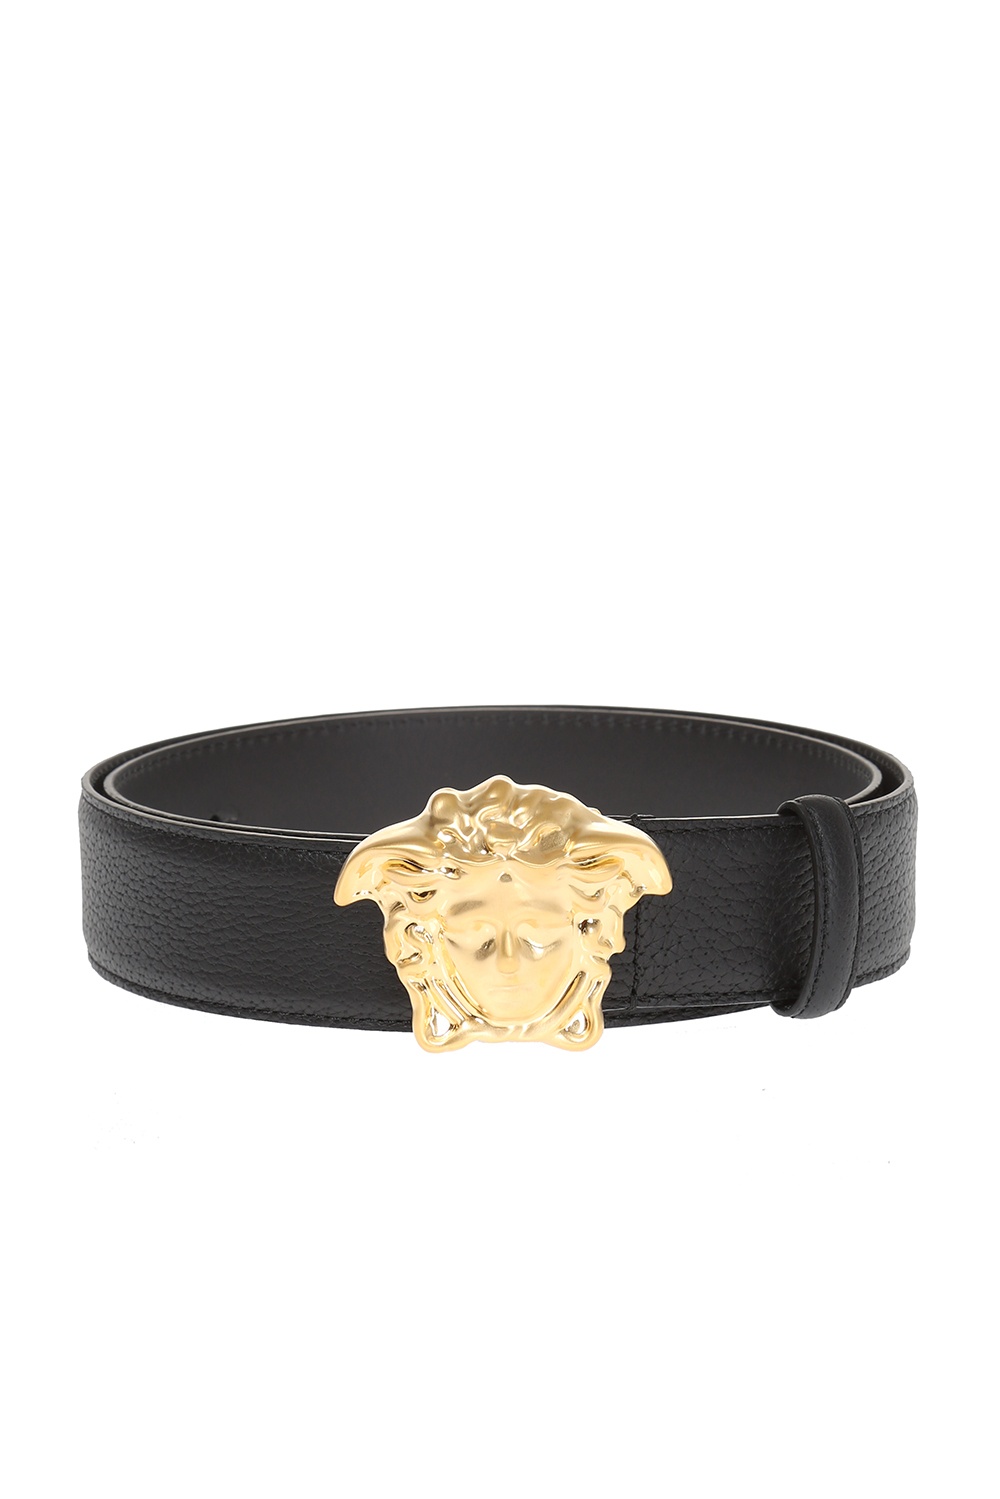 Versace Leather belt | Men's Accessories | IetpShops